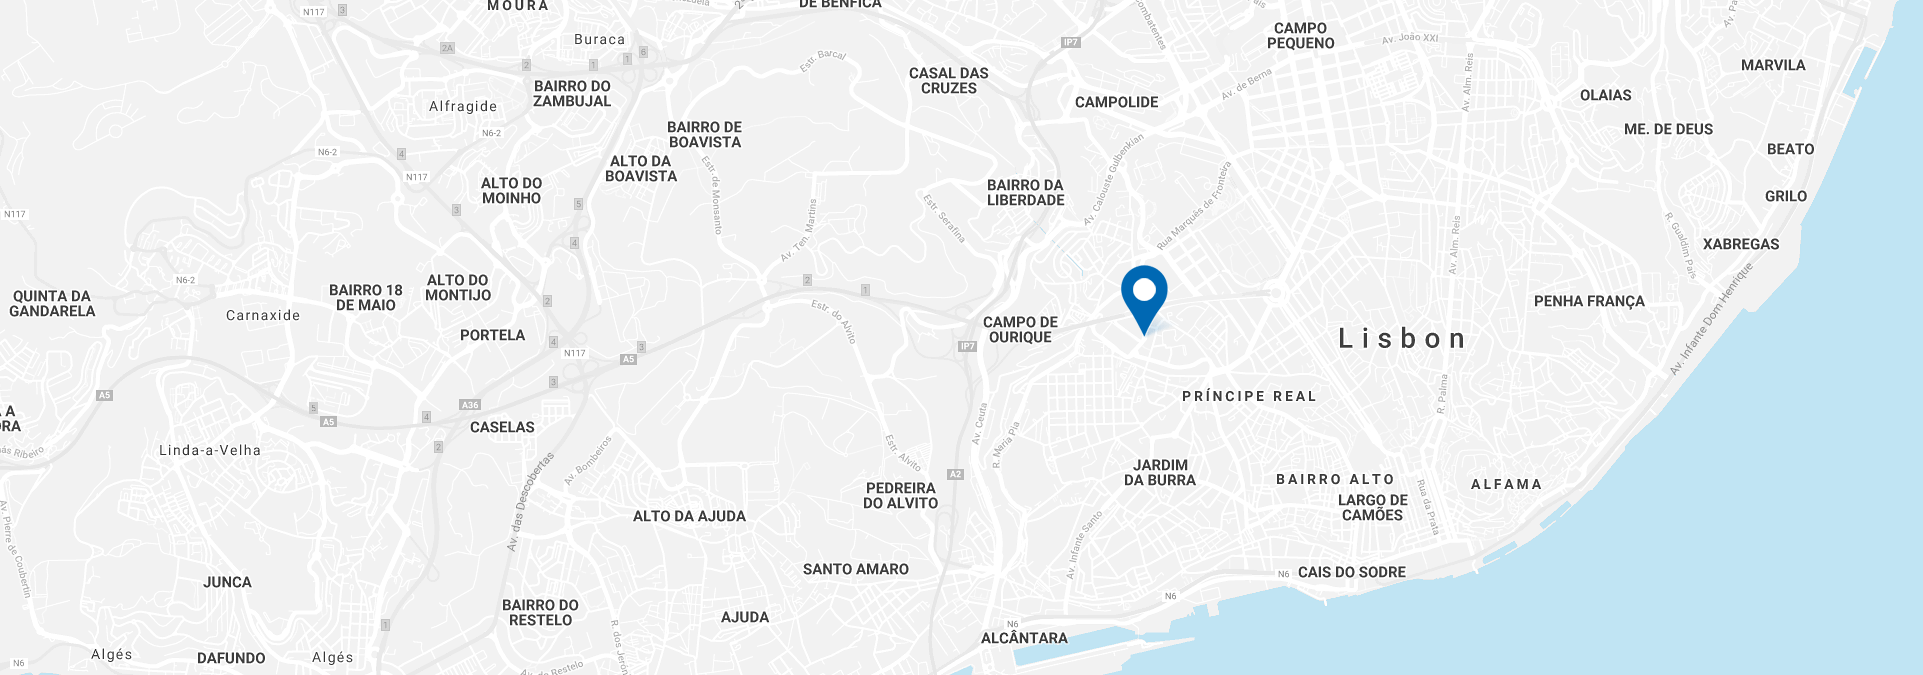 map-portugal-lisbon-full